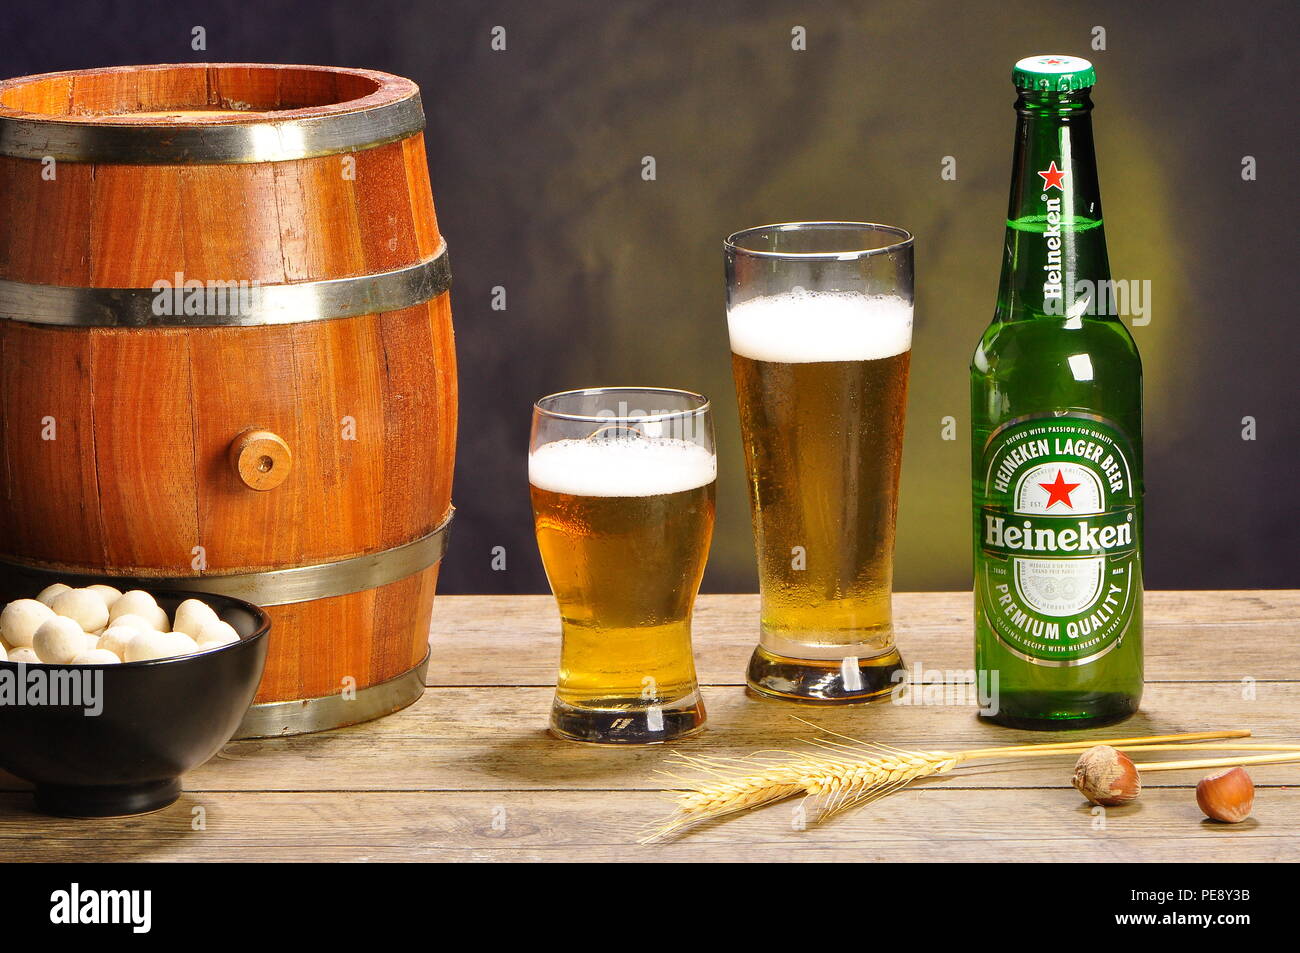 Heineken beer photo concept Stock Photo